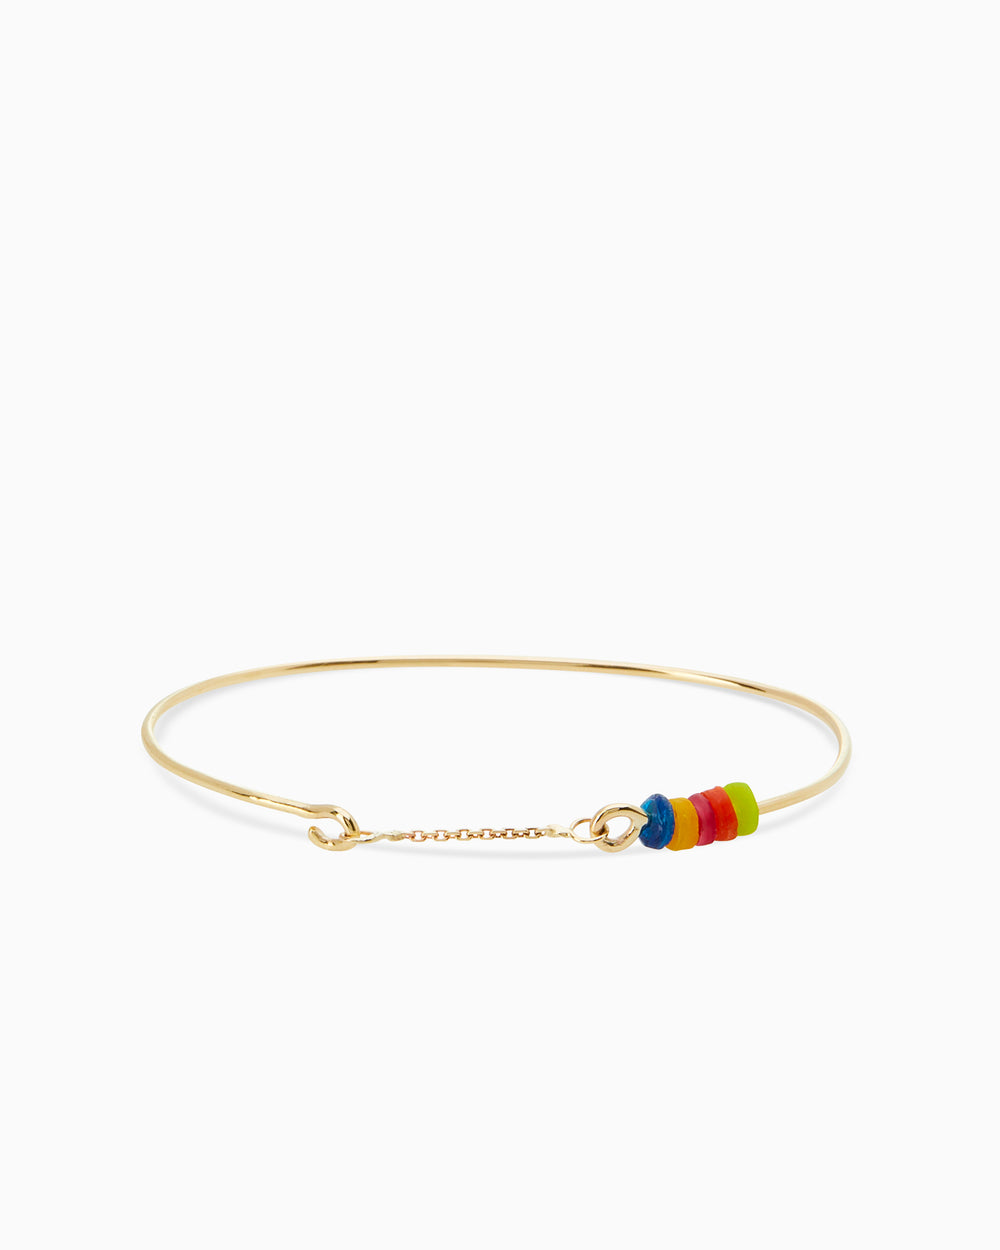 Resin Weave Bracelet | Solid Gold